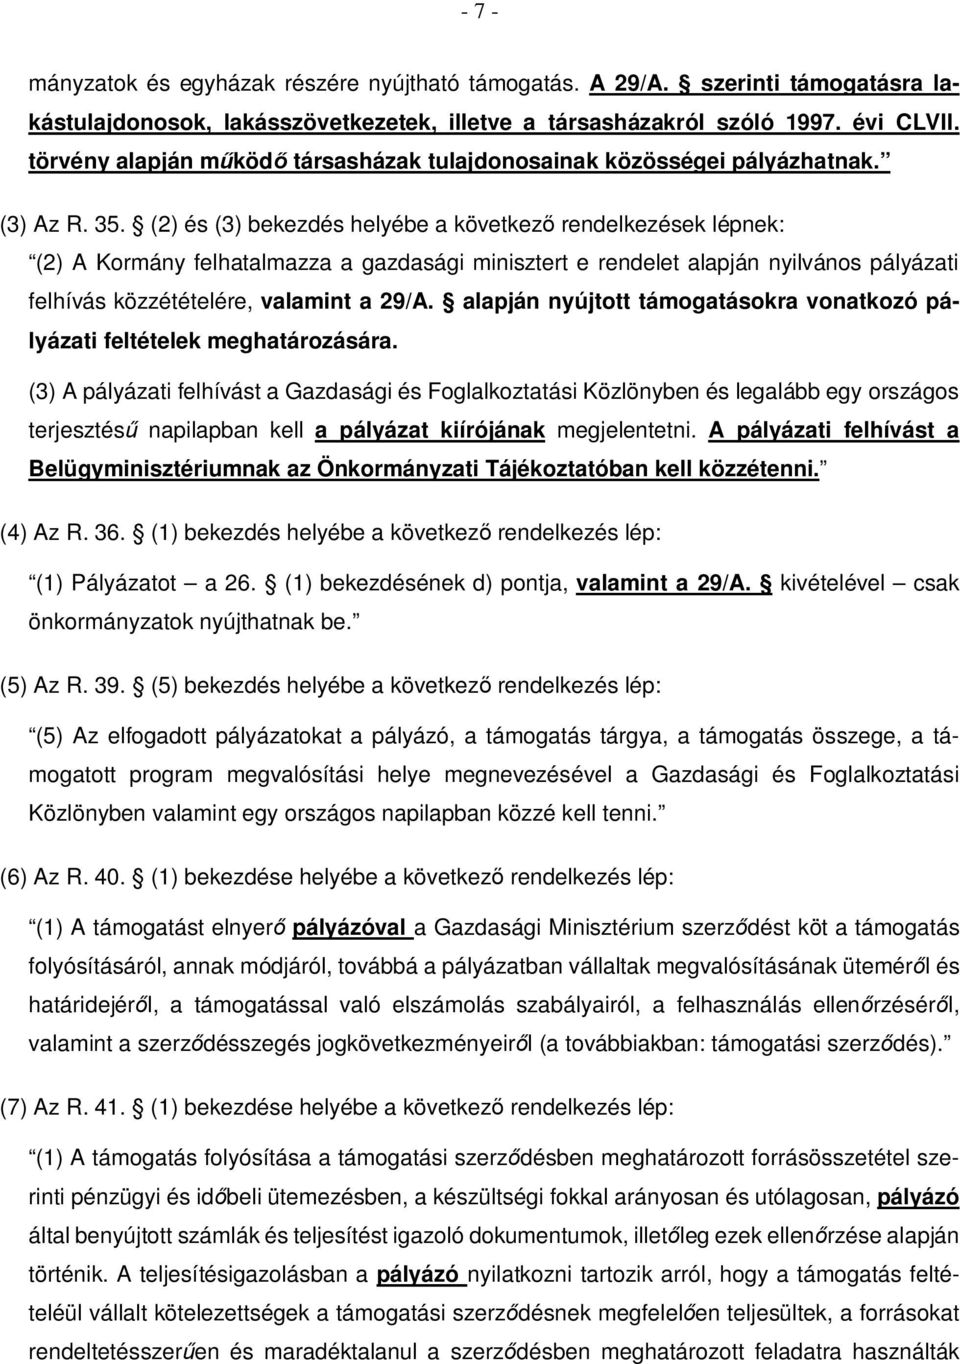 (2) és (3) bekezdés helyébe a következő rendelkezések lépnek: (2) A Kormány felhatalmazza a gazdasági minisztert e rendelet alapján nyilvános pályázati felhívás közzétételére, valamint a 29/A.